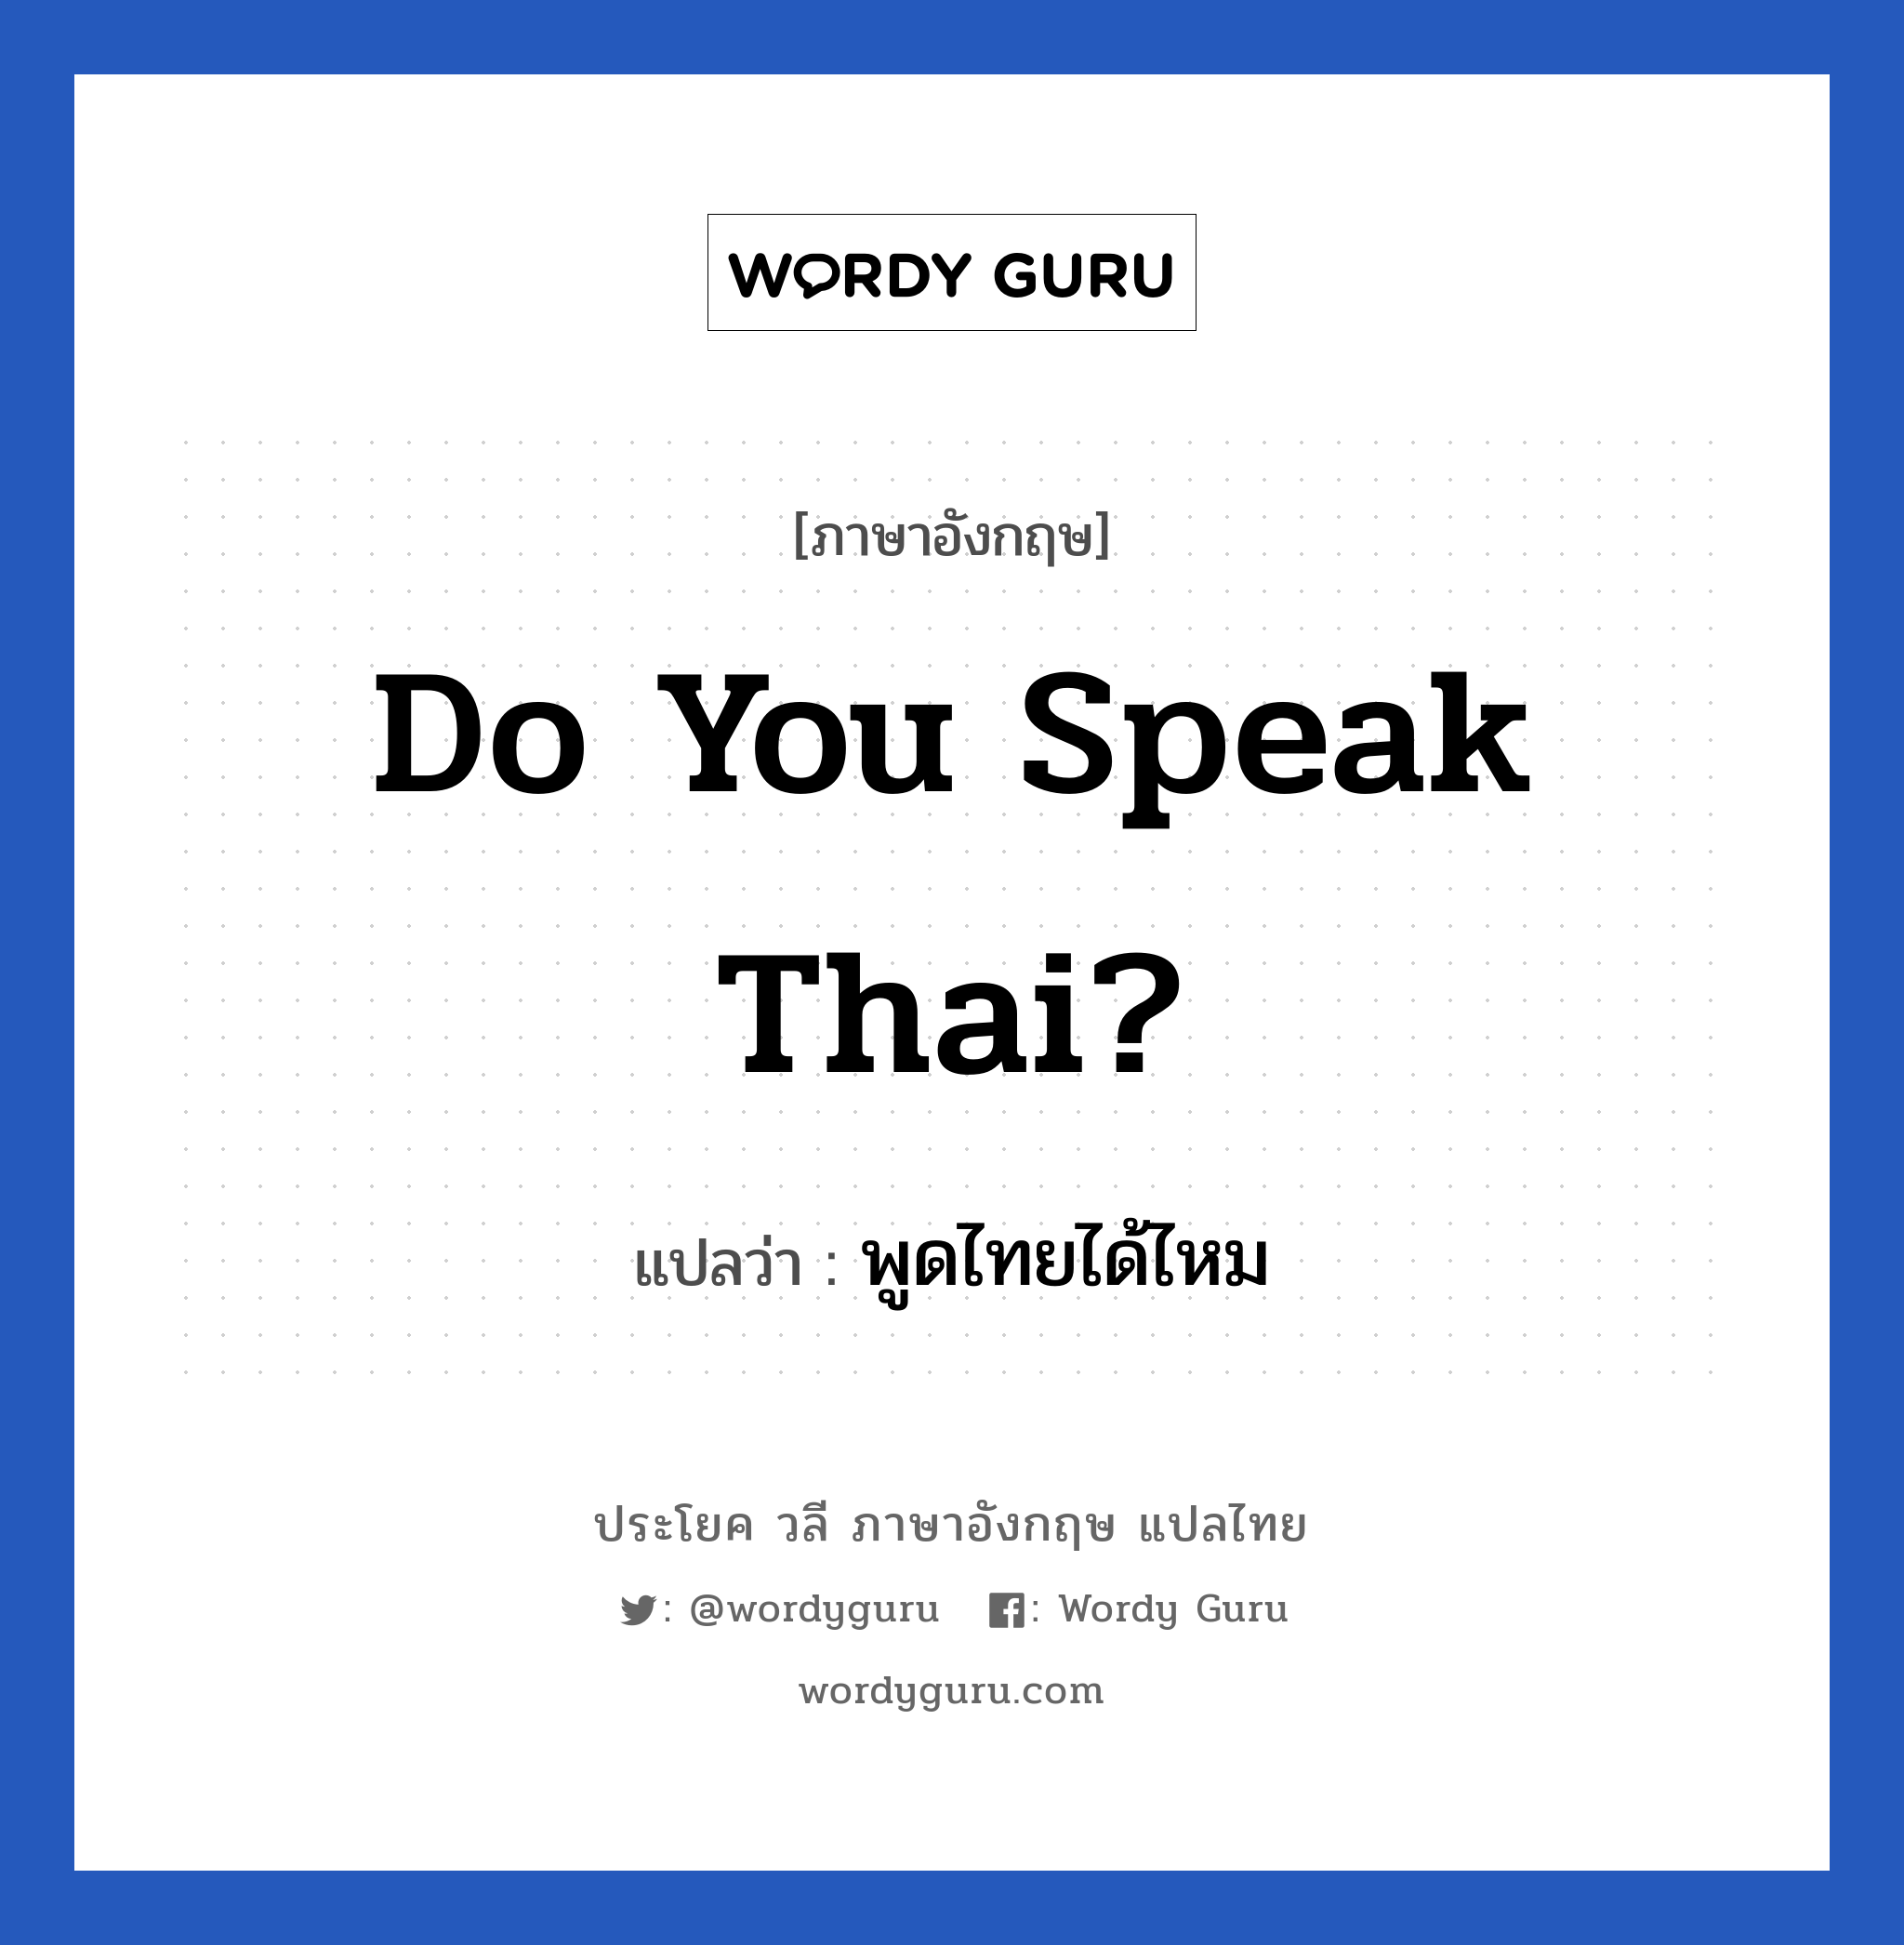 พูดไทยได้ไหม ภาษาอังกฤษ?, วลีภาษาอังกฤษ พูดไทยได้ไหม แปลว่า Do You Speak Thai?